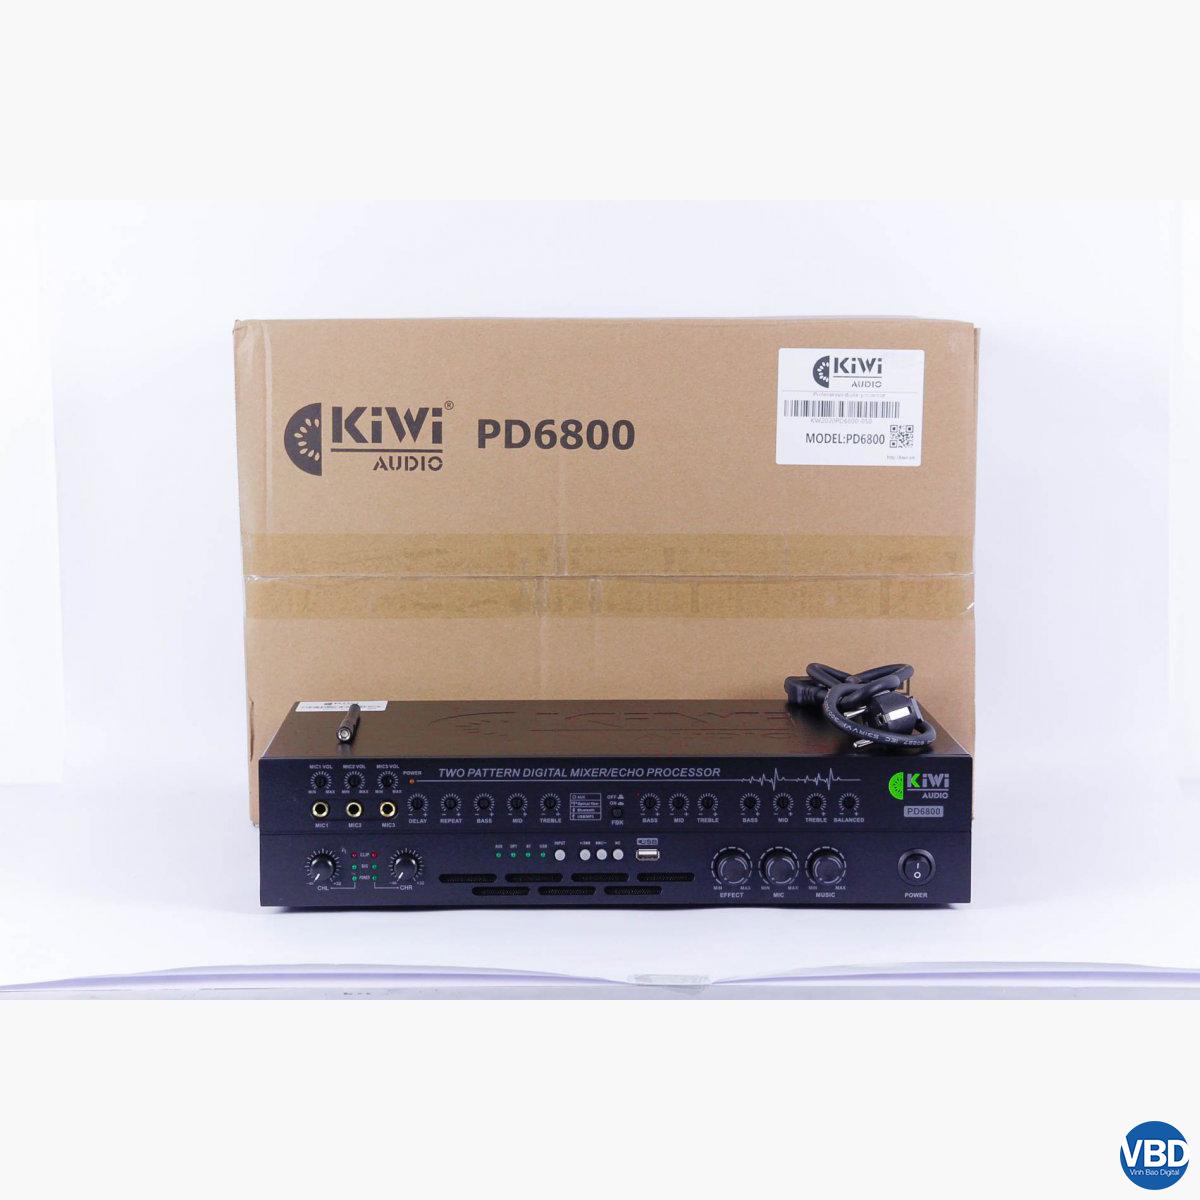 1CÔNG SUẤT NGUỒN XUNG LIỀN VANG CƠ KIWI PD6800